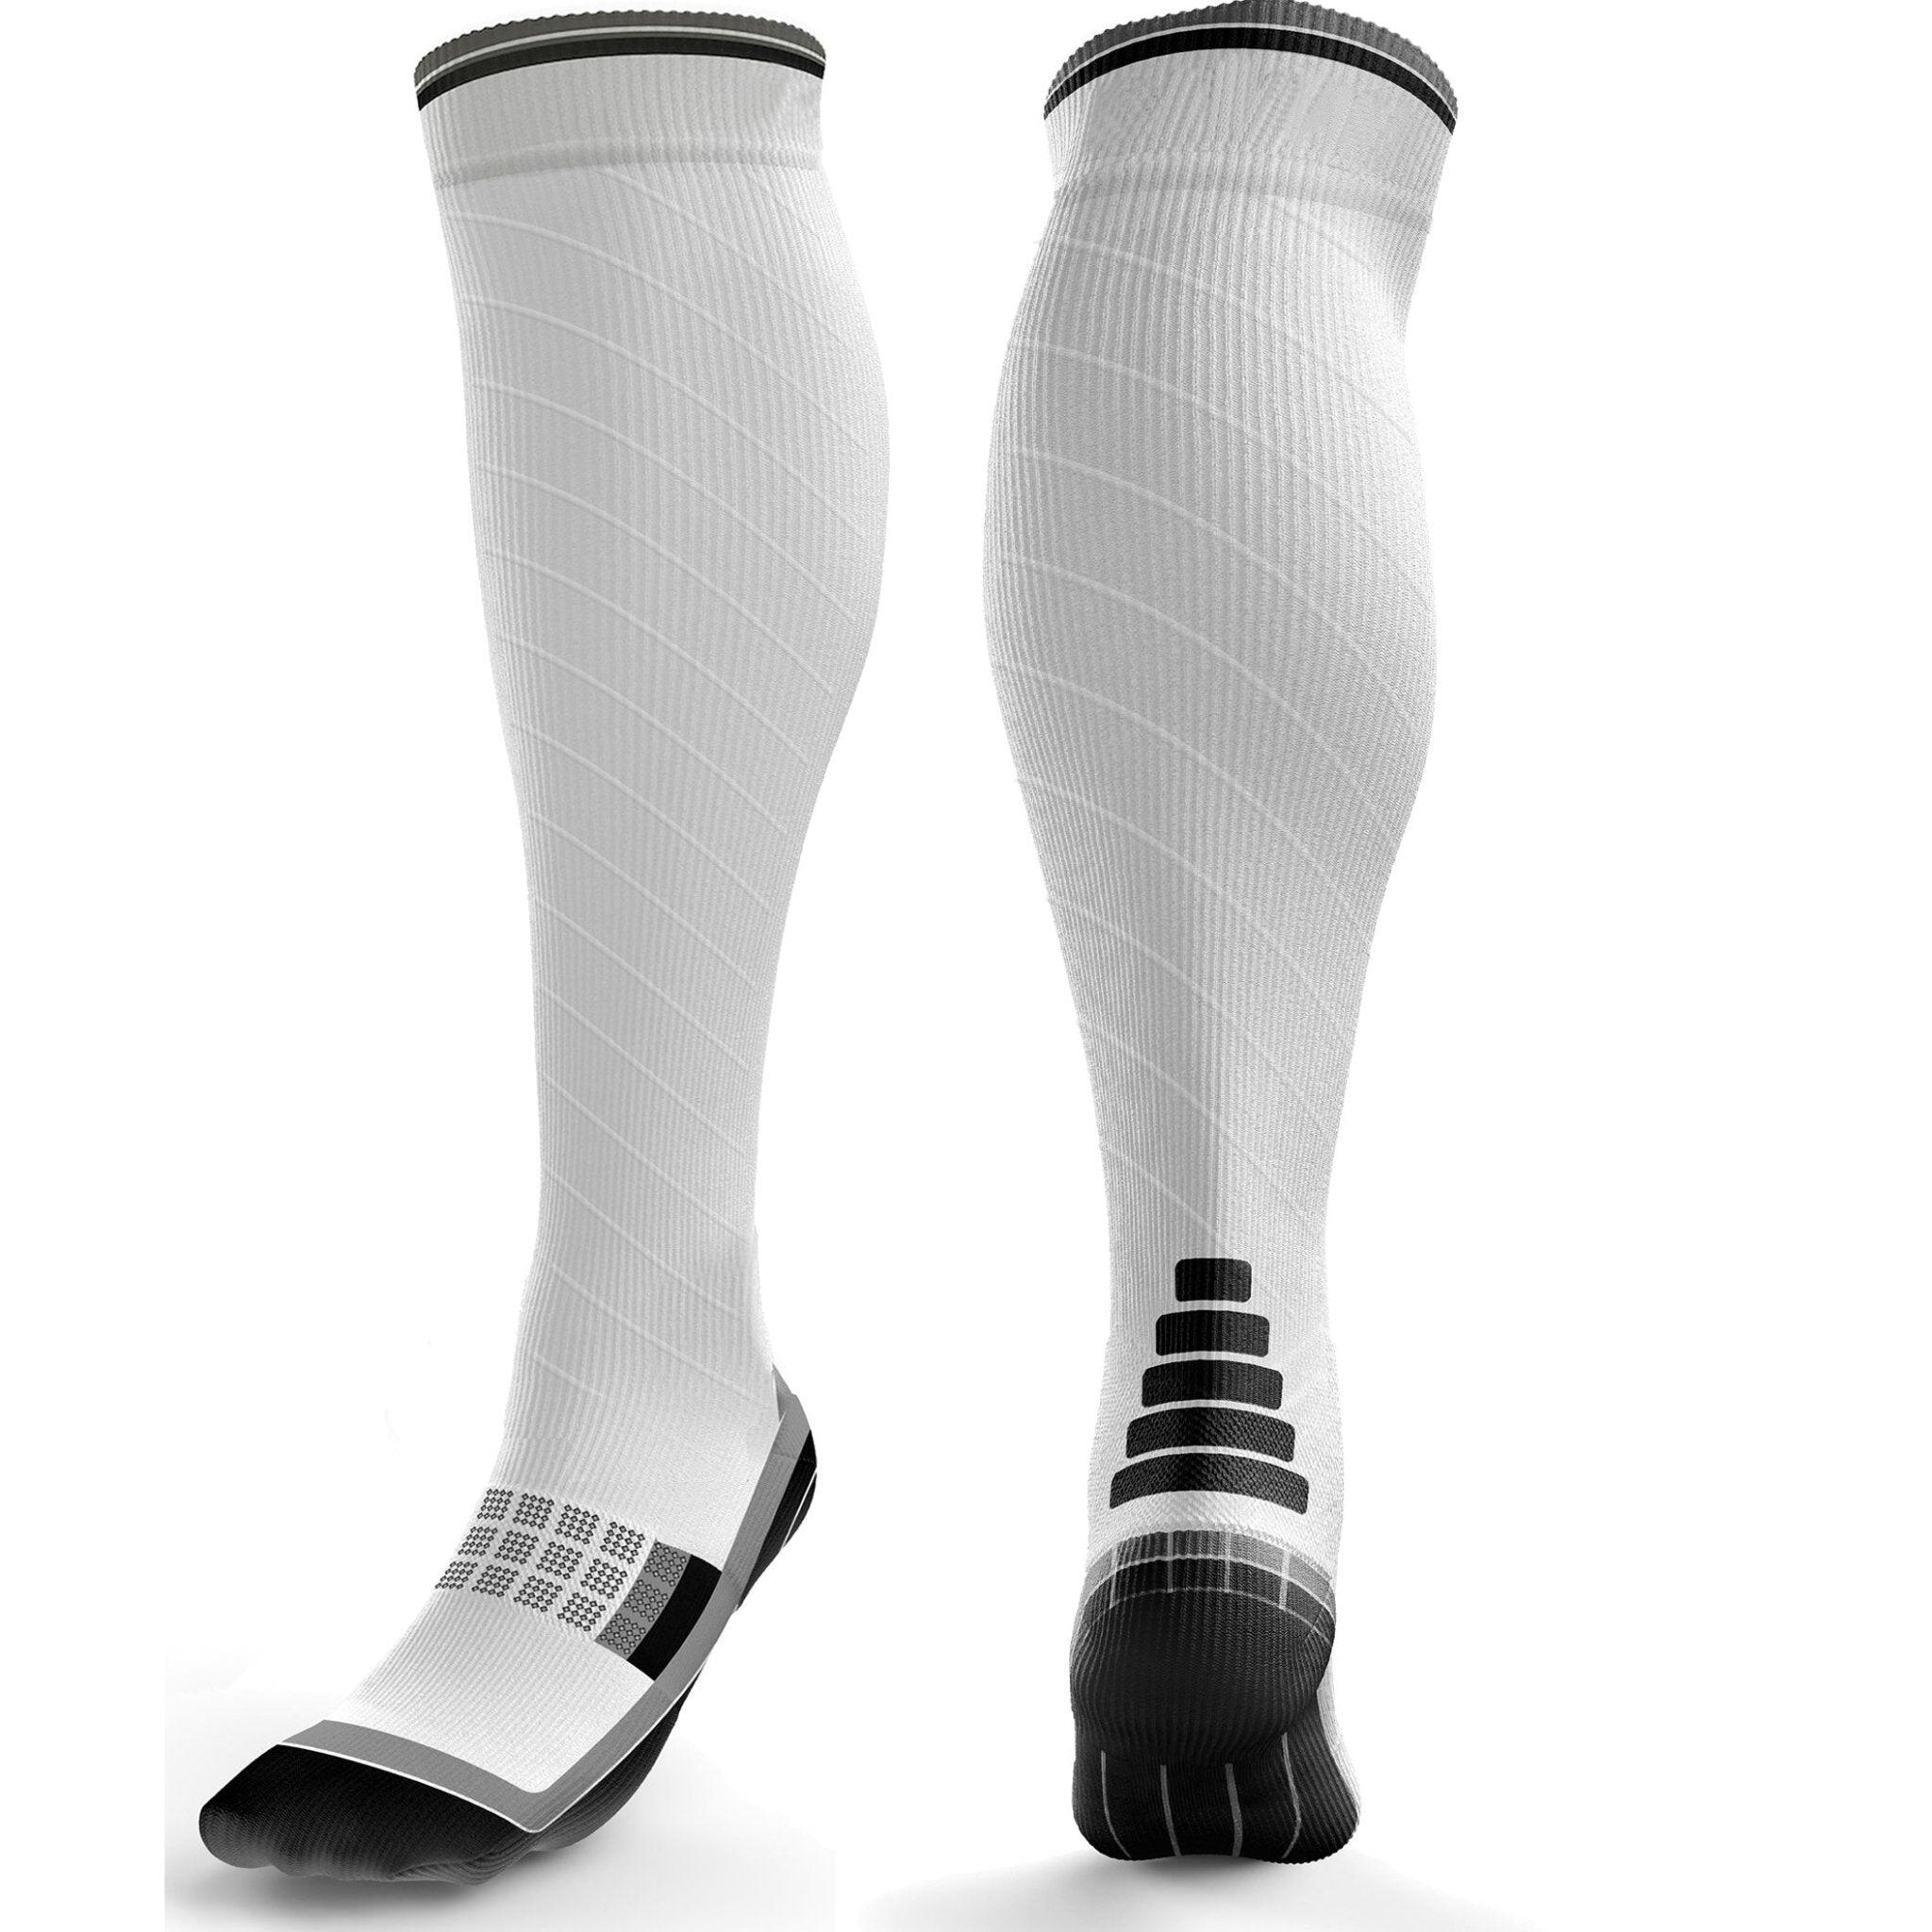 AZENGEAR Calf Support Compression Socks for Men & Women (20-30 mmHg)(Multicolour)